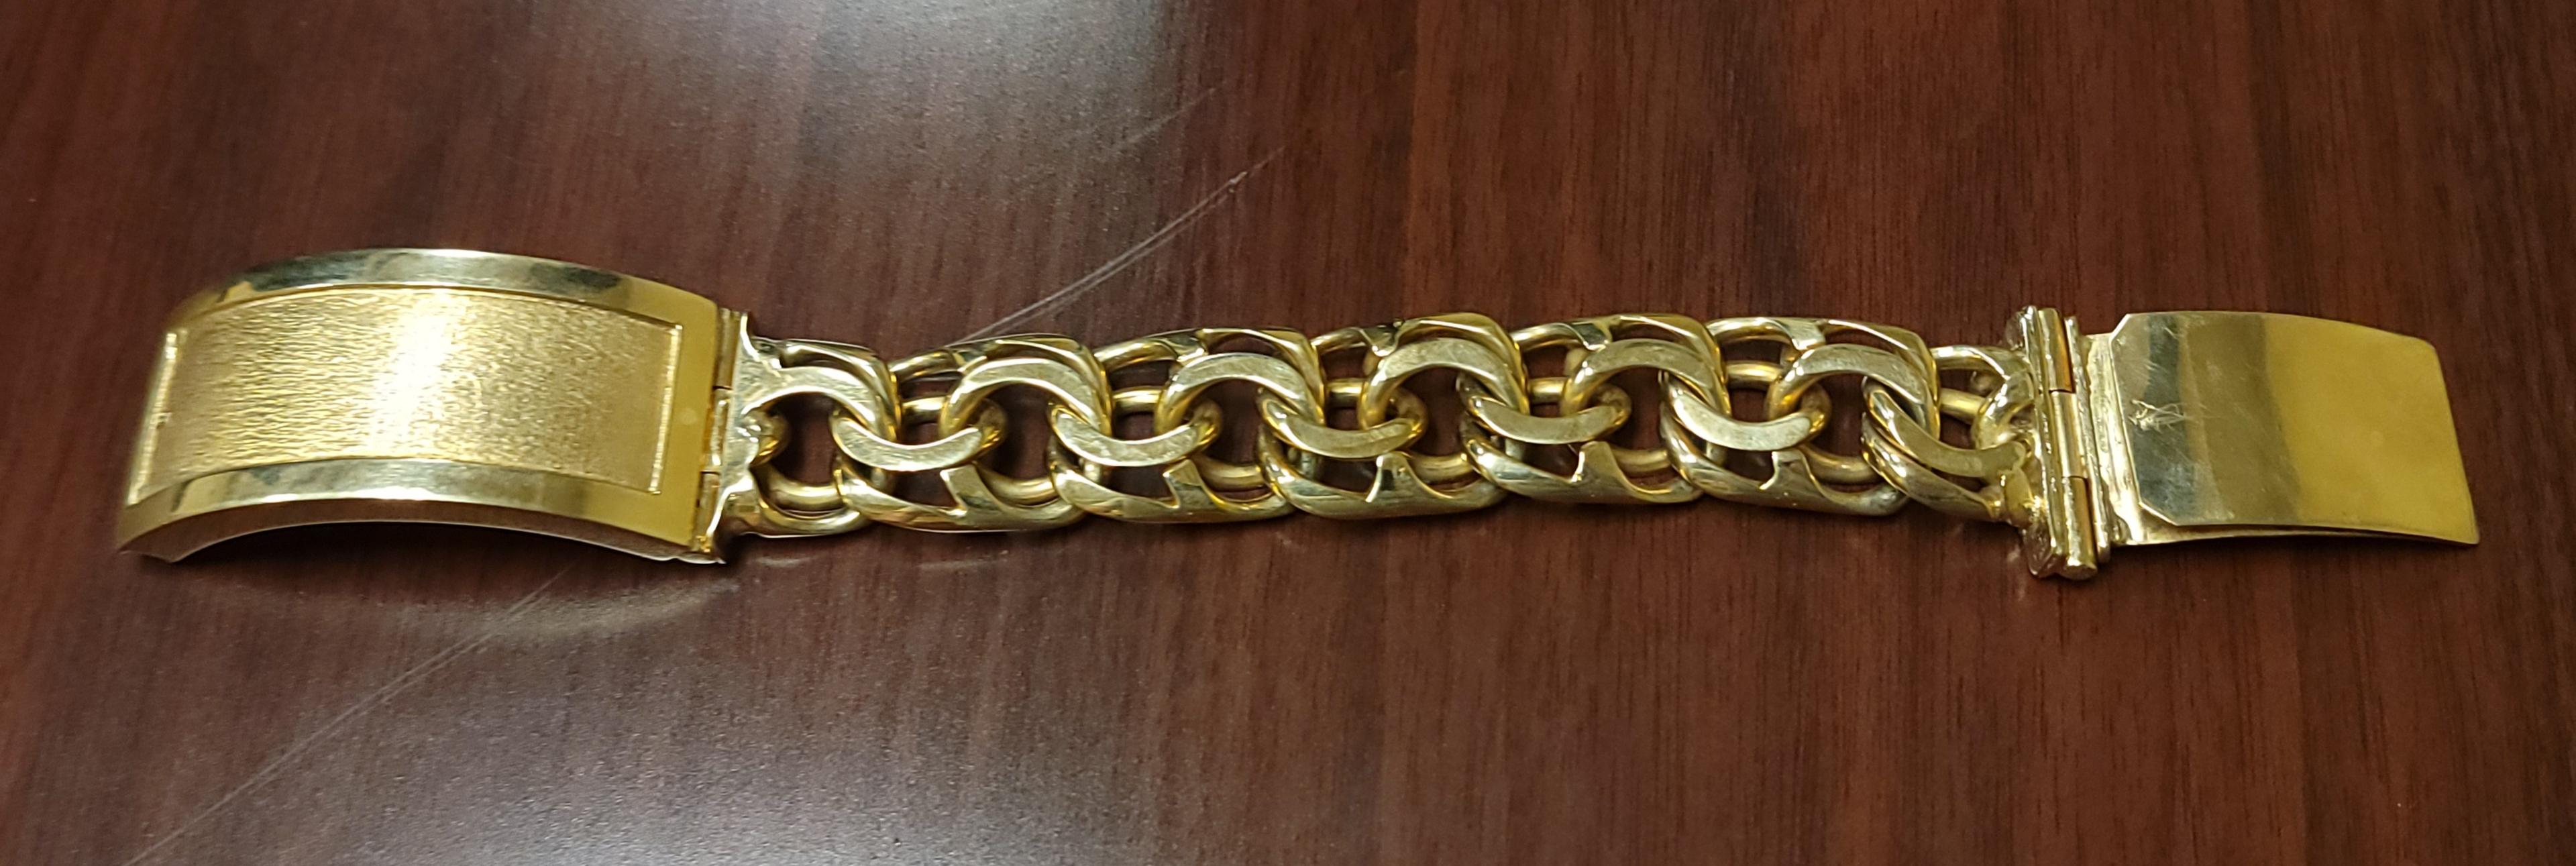 8.5" 10k Yellow Gold Chino Bull Bracelet